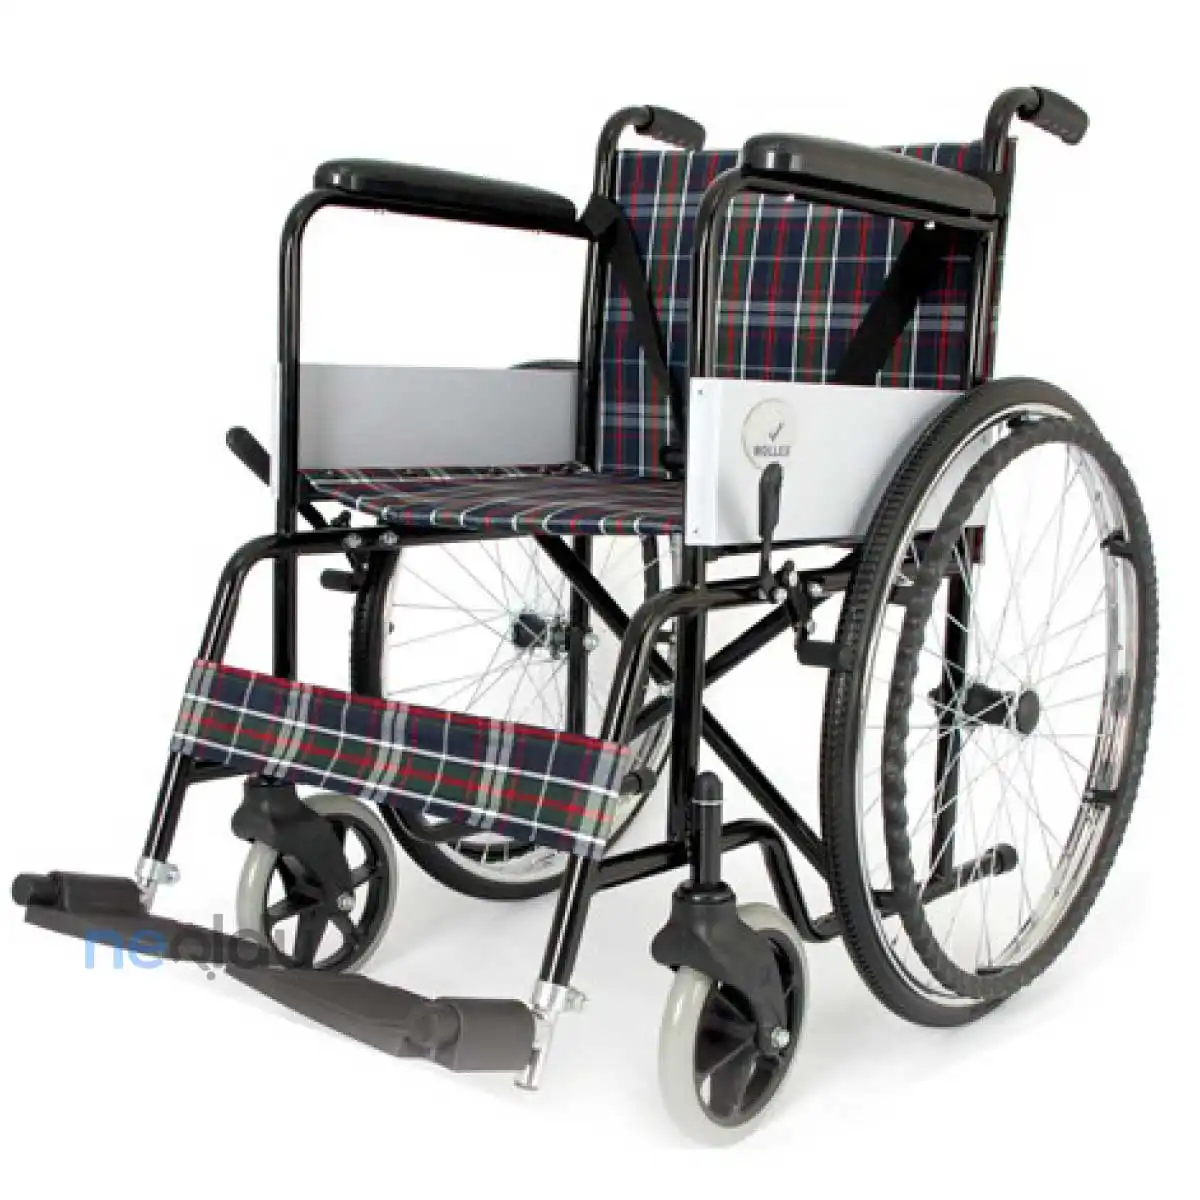 Tekerlekli Sandalye Modelleri